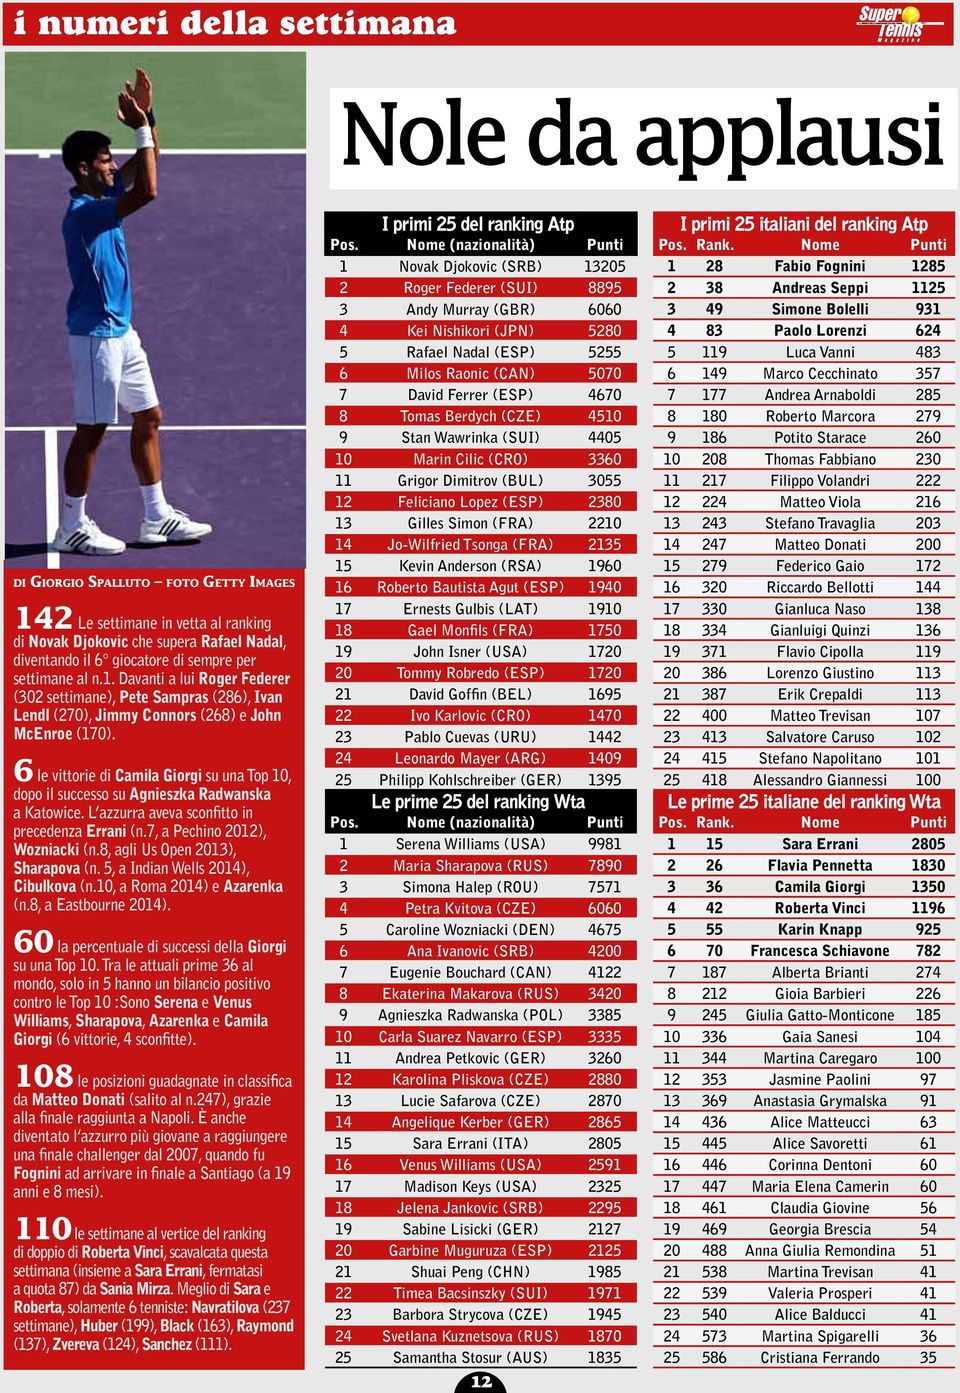 6 le vittorie di Camila Giorgi su una Top 10, dopo il successo su Agnieszka Radwanska a Katowice. L azzurra aveva sconfitto in precedenza Errani (n.7, a Pechino 2012), Wozniacki (n.